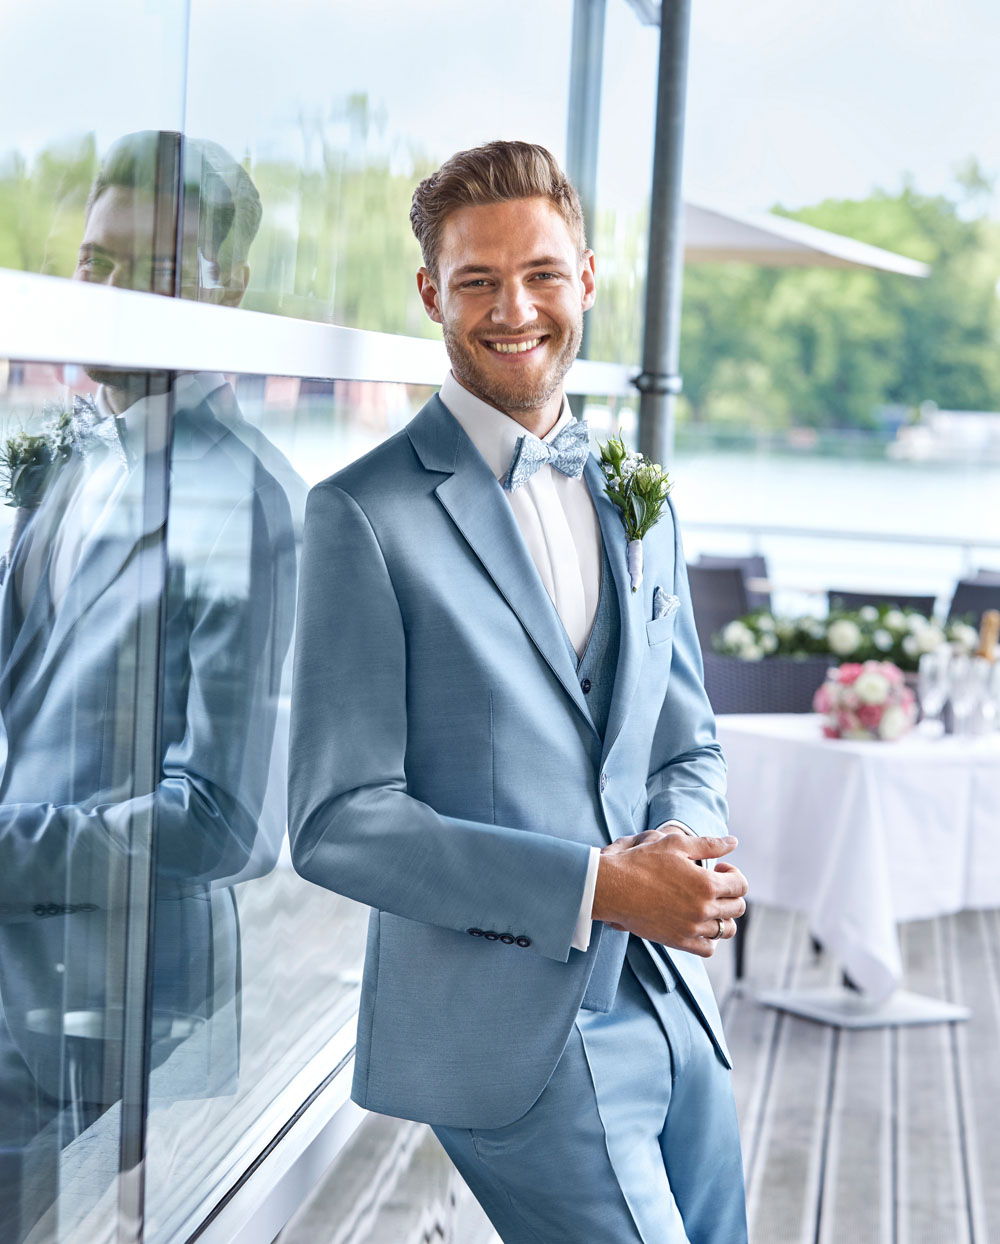 Wedding Suits for Men | Groom blue suit, Groom wedding attire, Blue suit  wedding